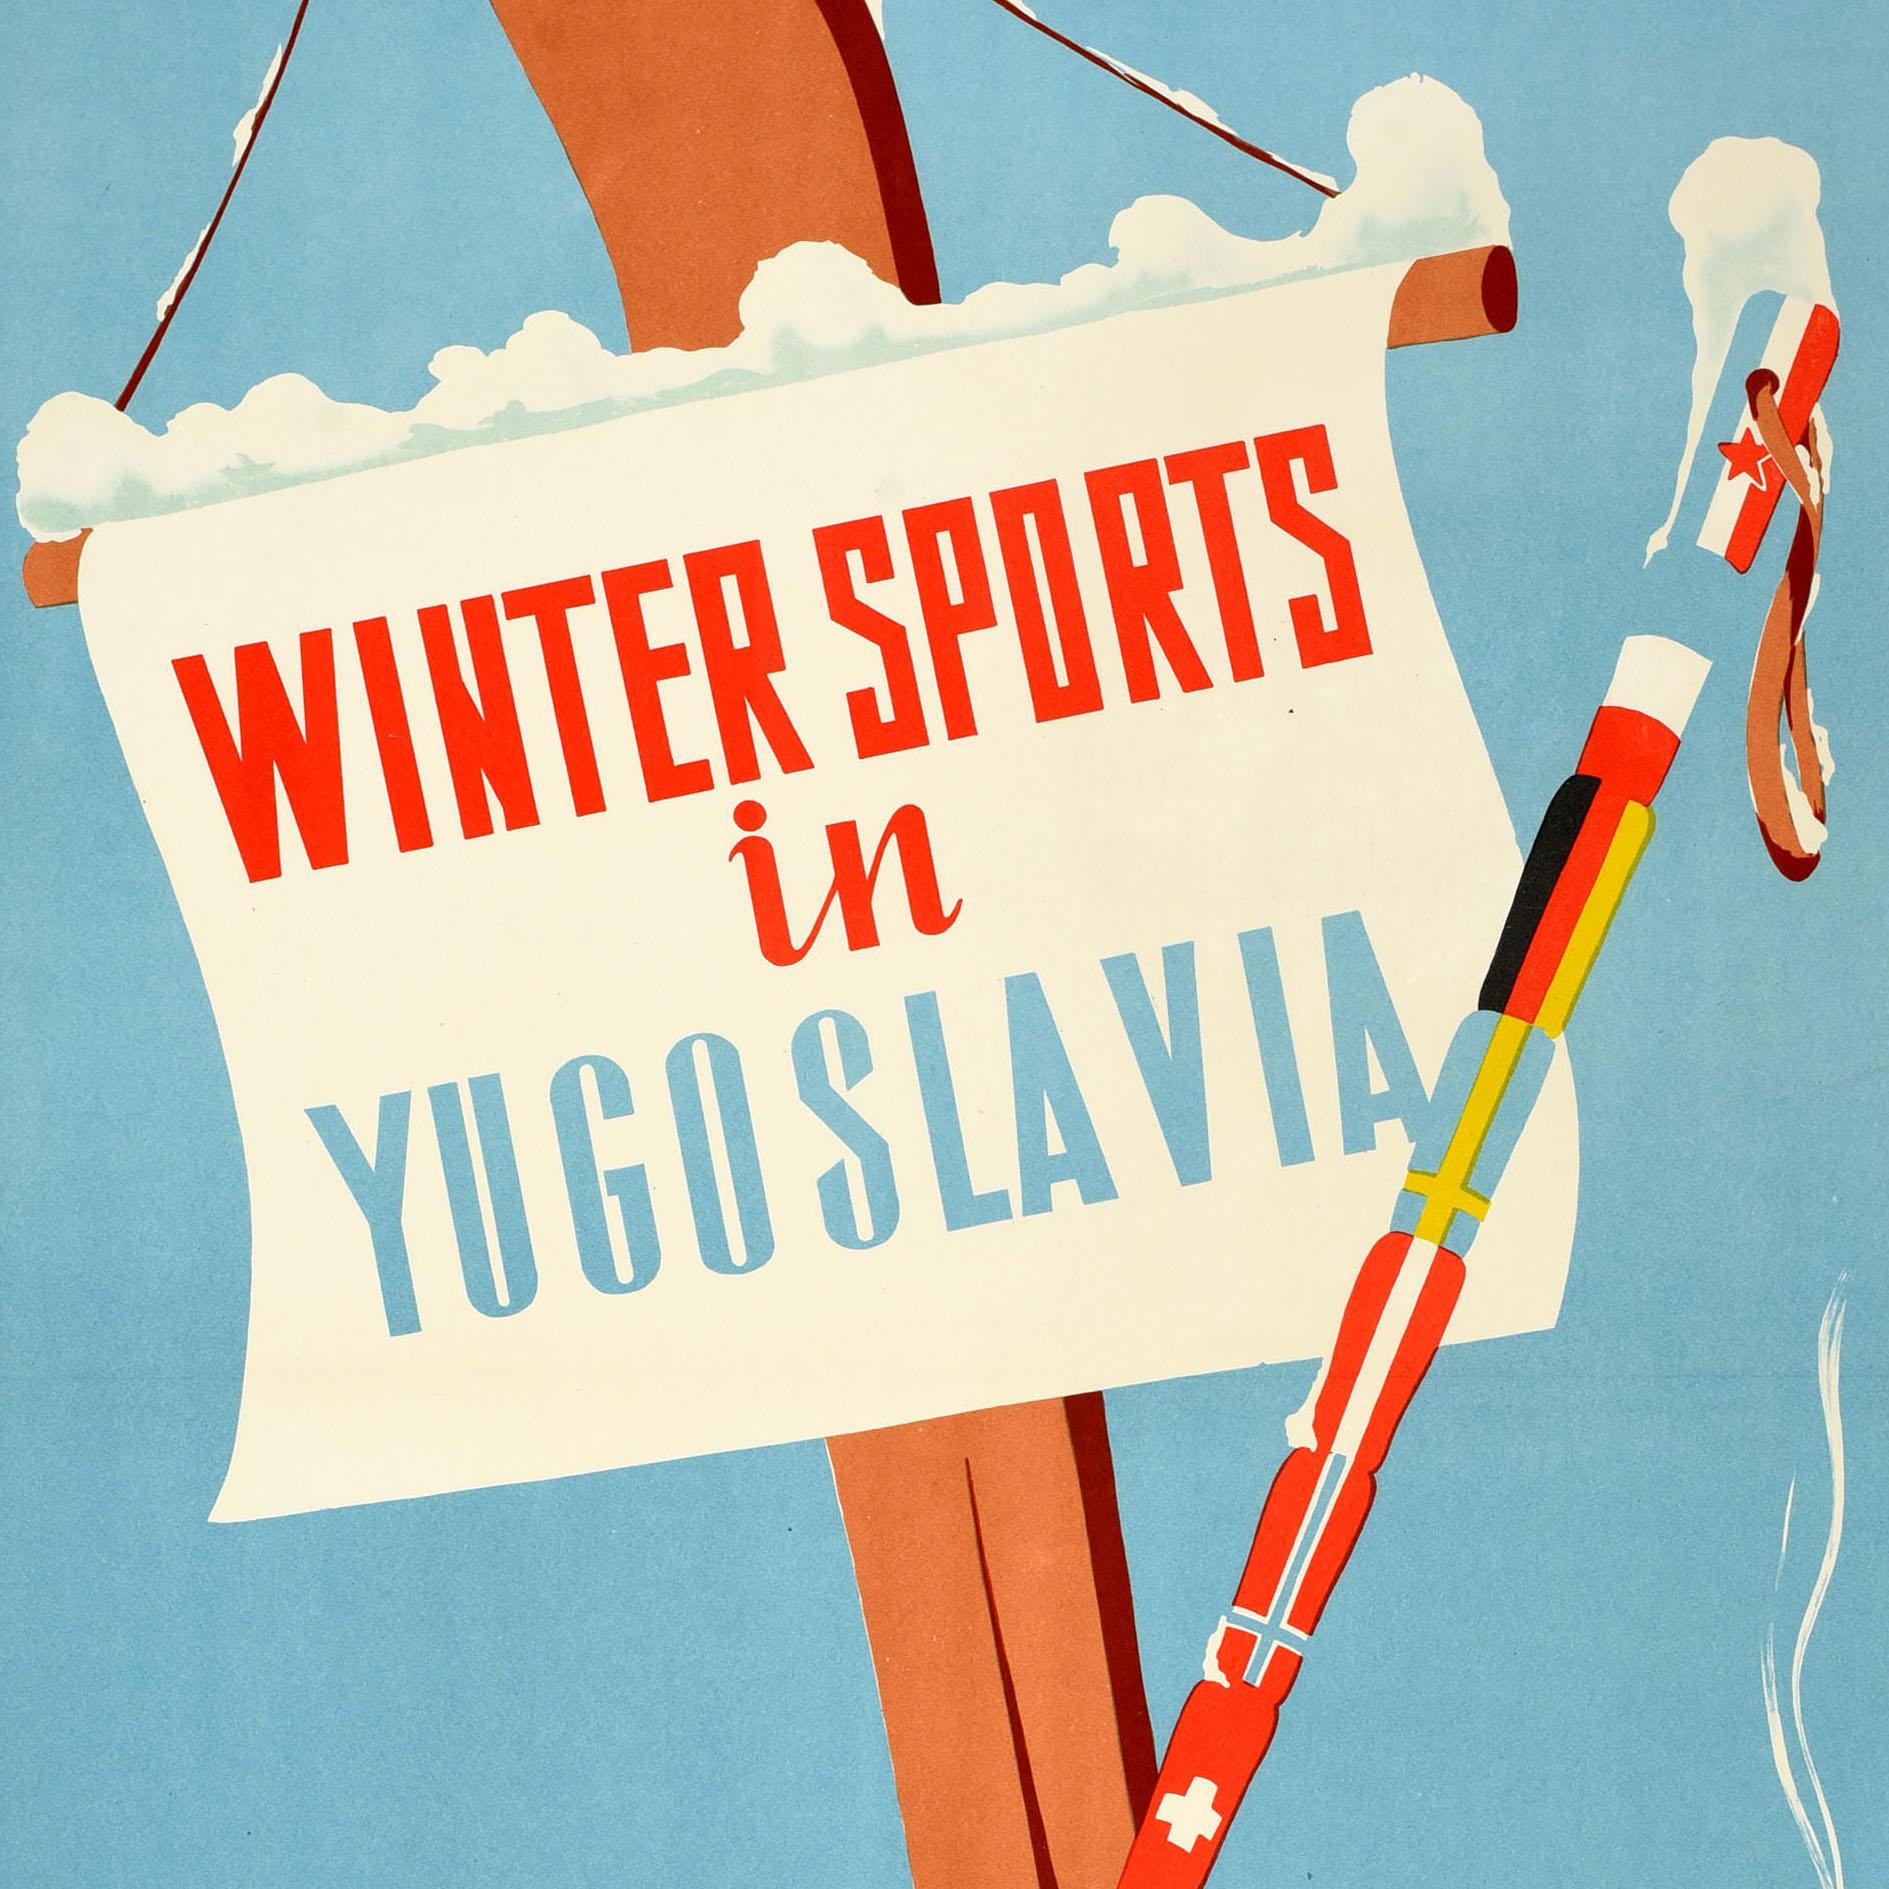 Original affiche de voyage vintage pour les sports d'hiver en Yougoslavie - le texte du titre sur un panneau accroché à un ski en bois à côté d'un bâton de ski décoré de divers drapeaux nationaux dressés dans la neige au premier plan, projetant une